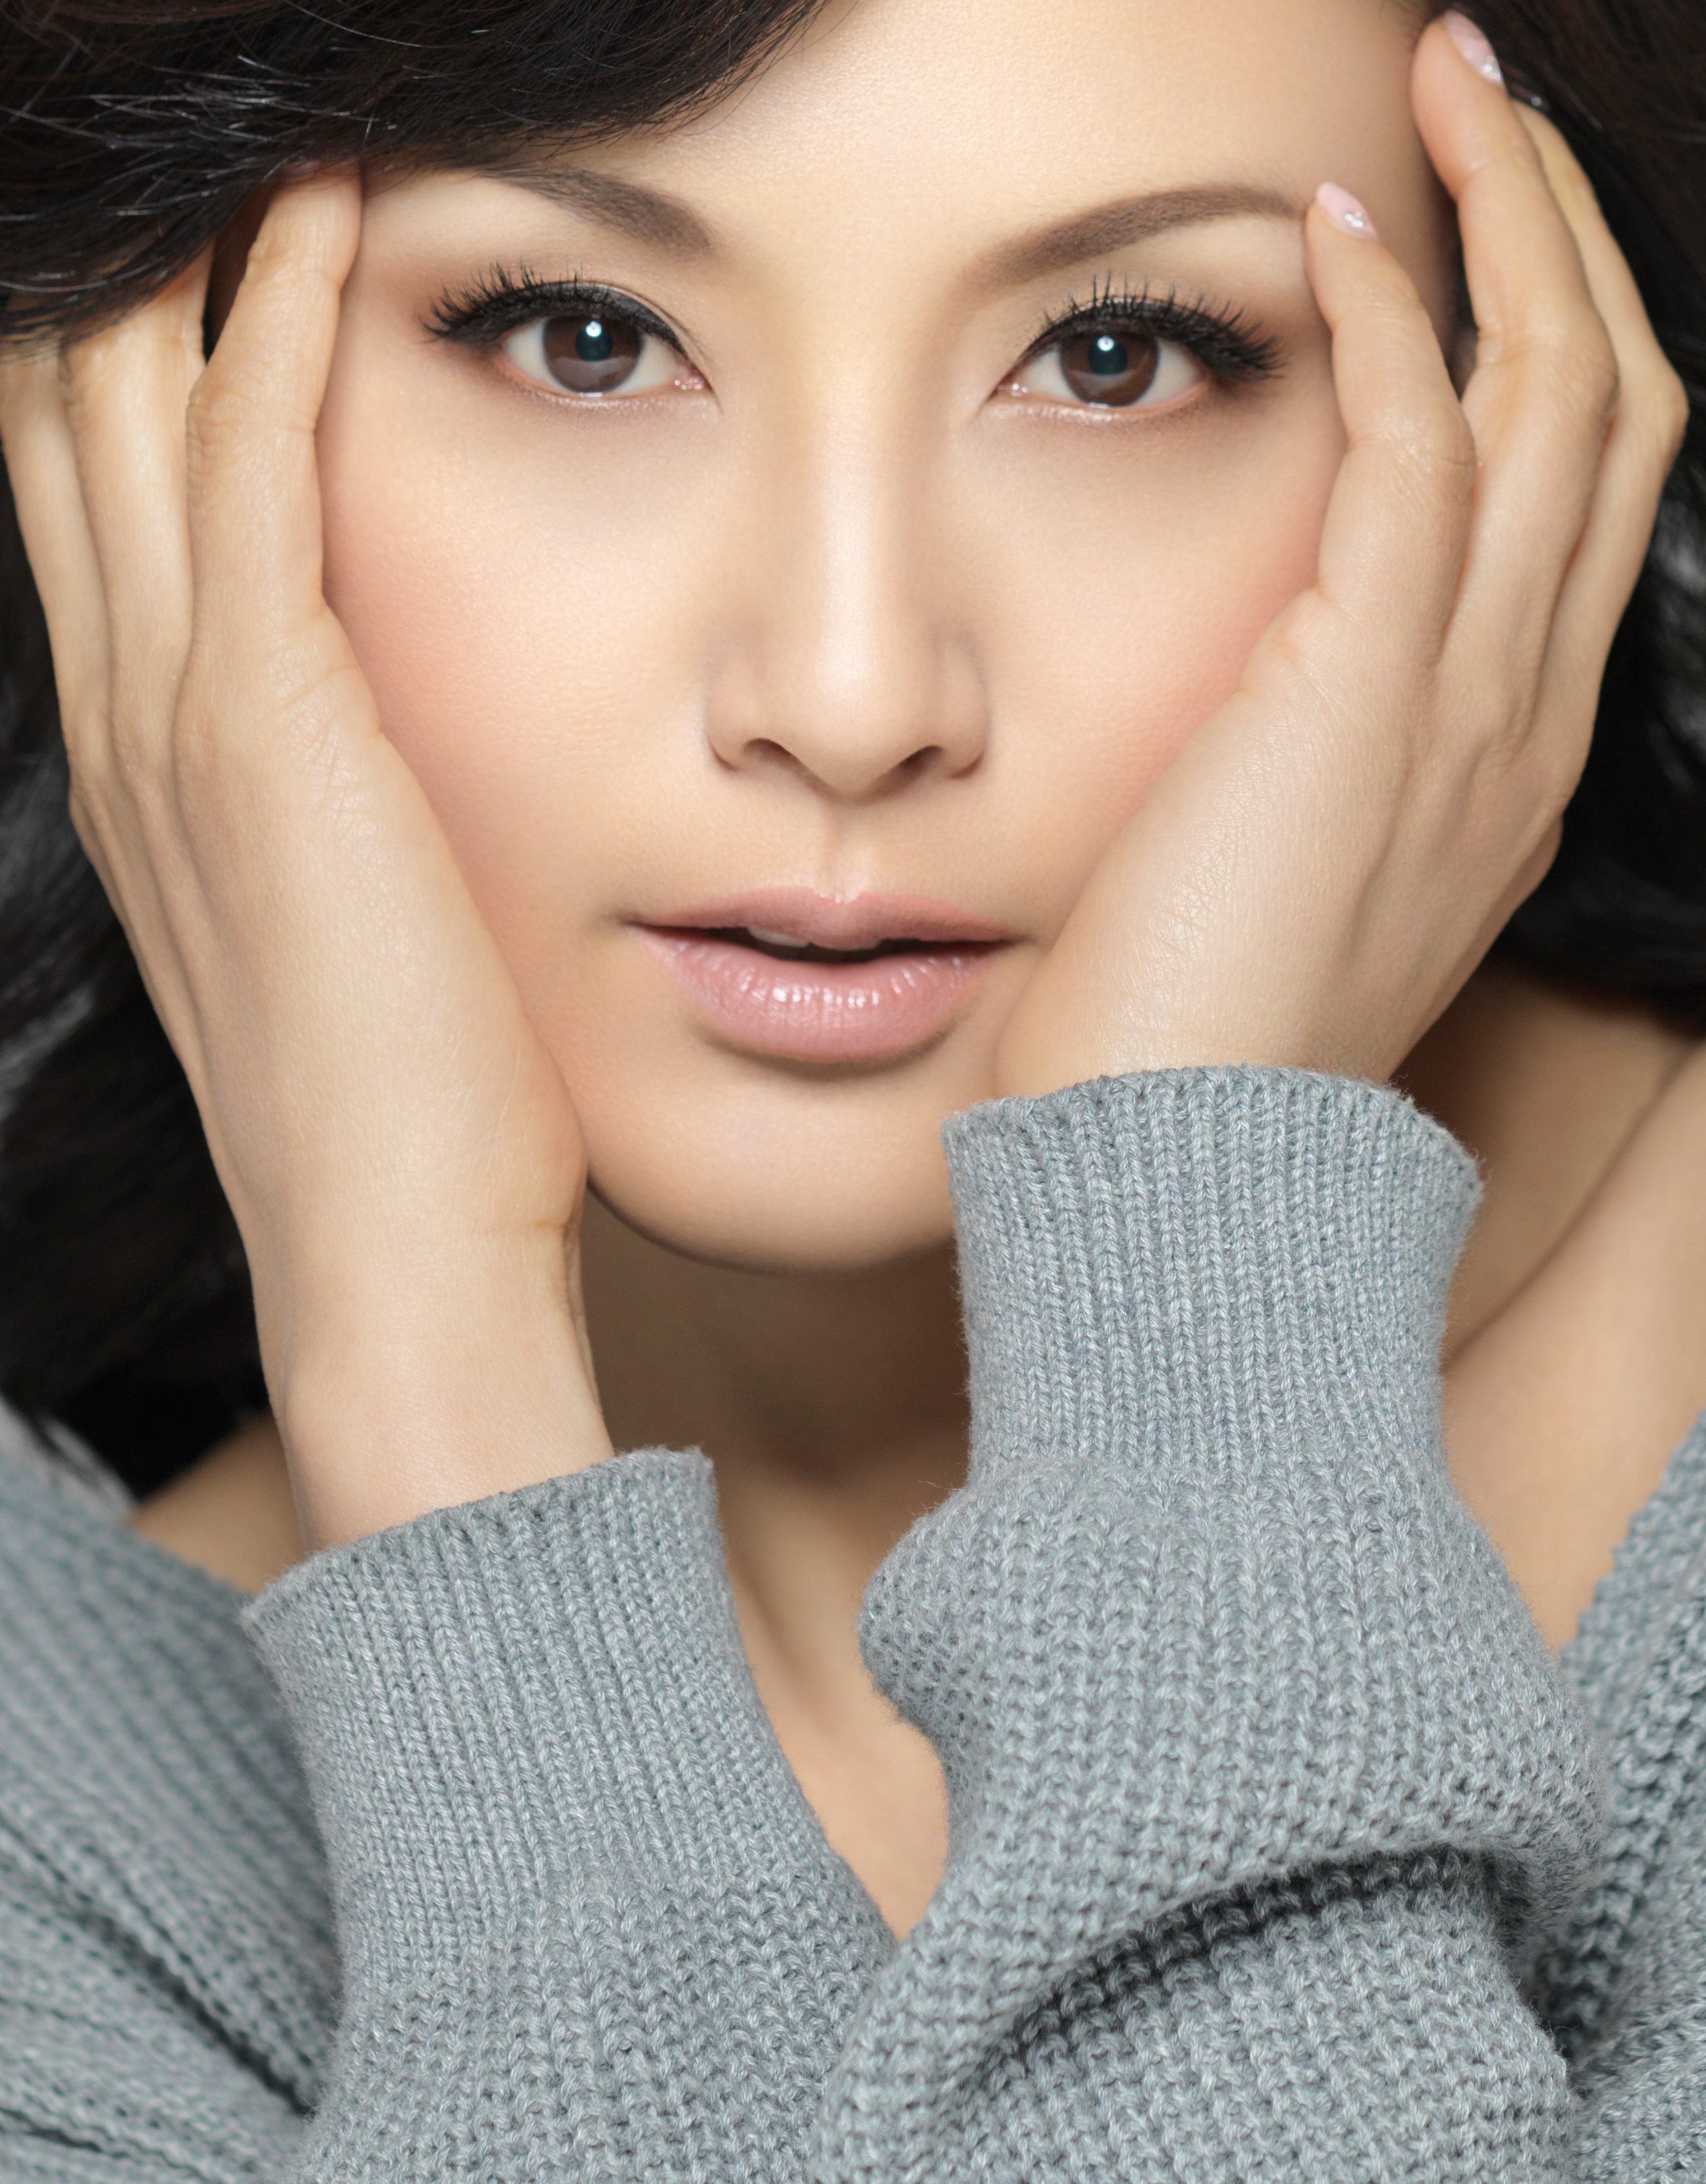 Actress Norika Fujiwara photographed by M. of em.fotografik, March 2015.